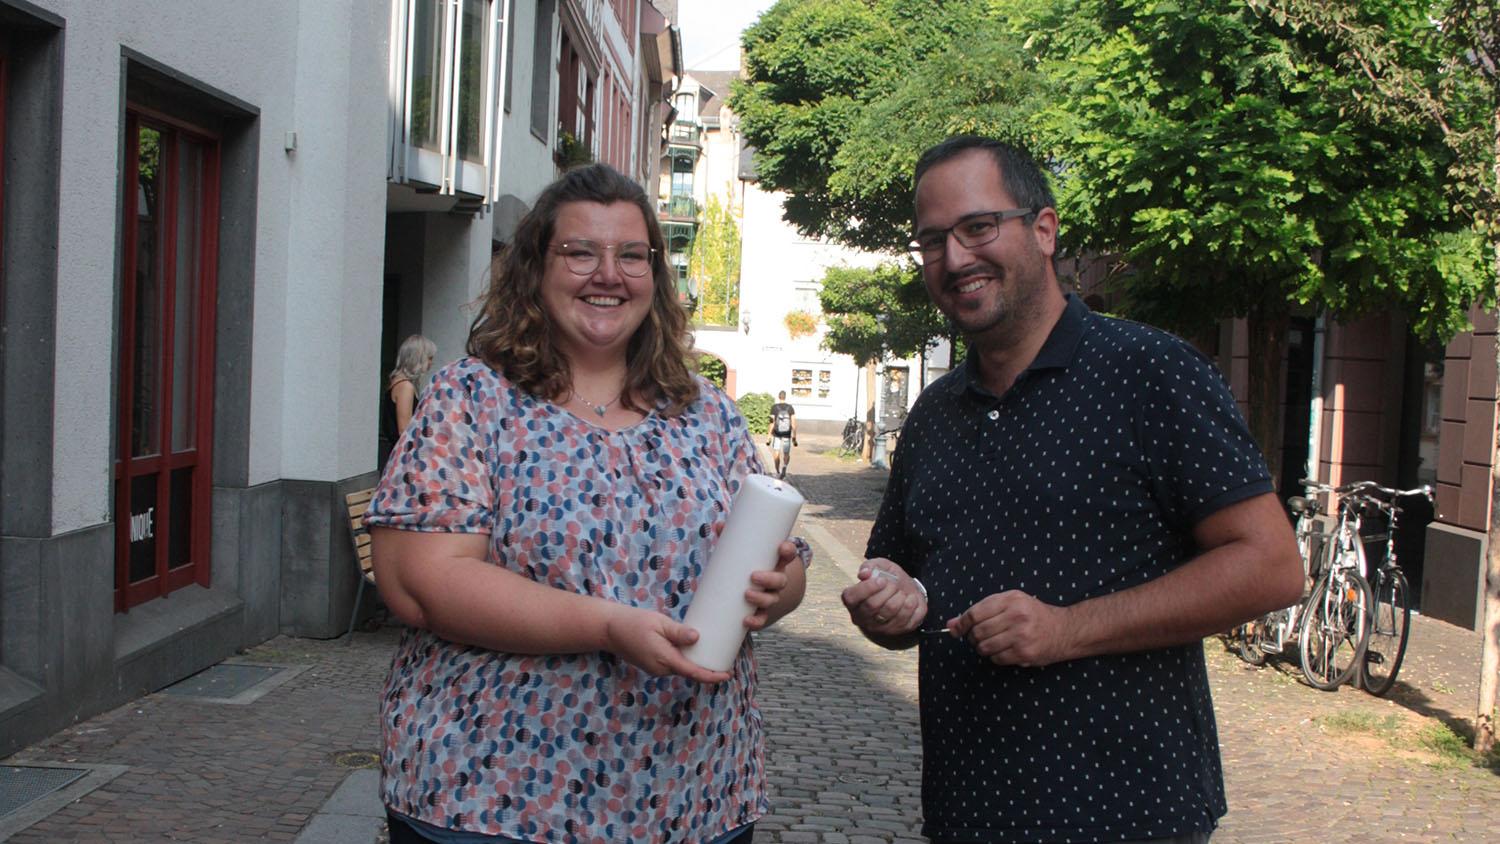 Lena Ullges und Patrick Strosche wollen in ihrem Beruf „Licht in die Welt bringen“. Das symbolisiert die Kerze, die sie mitgebracht haben. (c) Kirchenzeitung/ Anja Weiffen